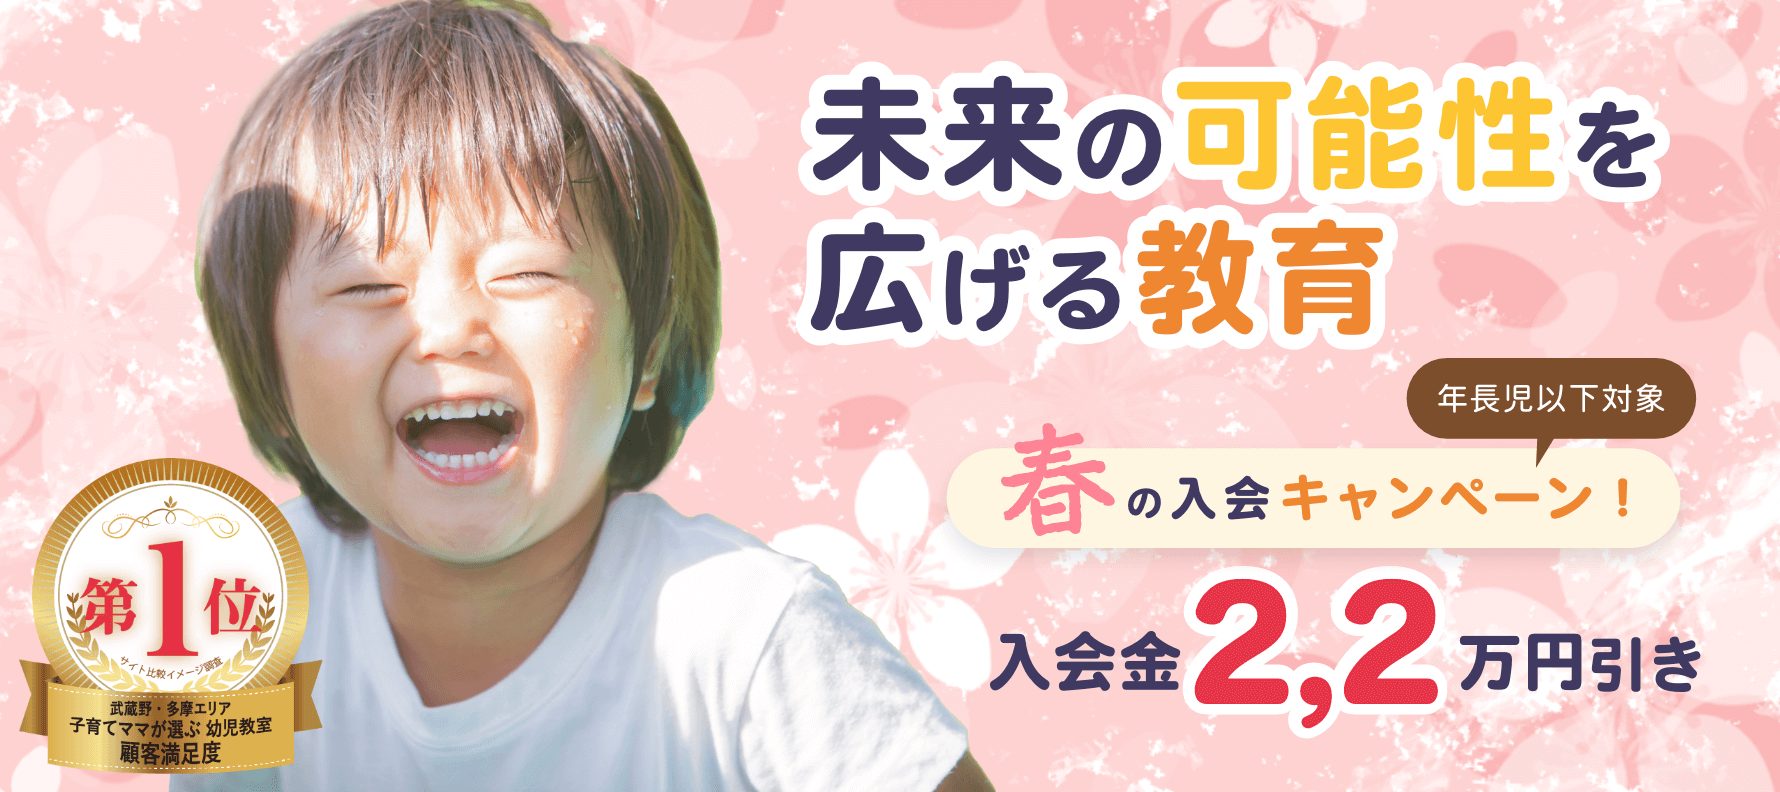 春の八王子幼児教室入会キャンペーン